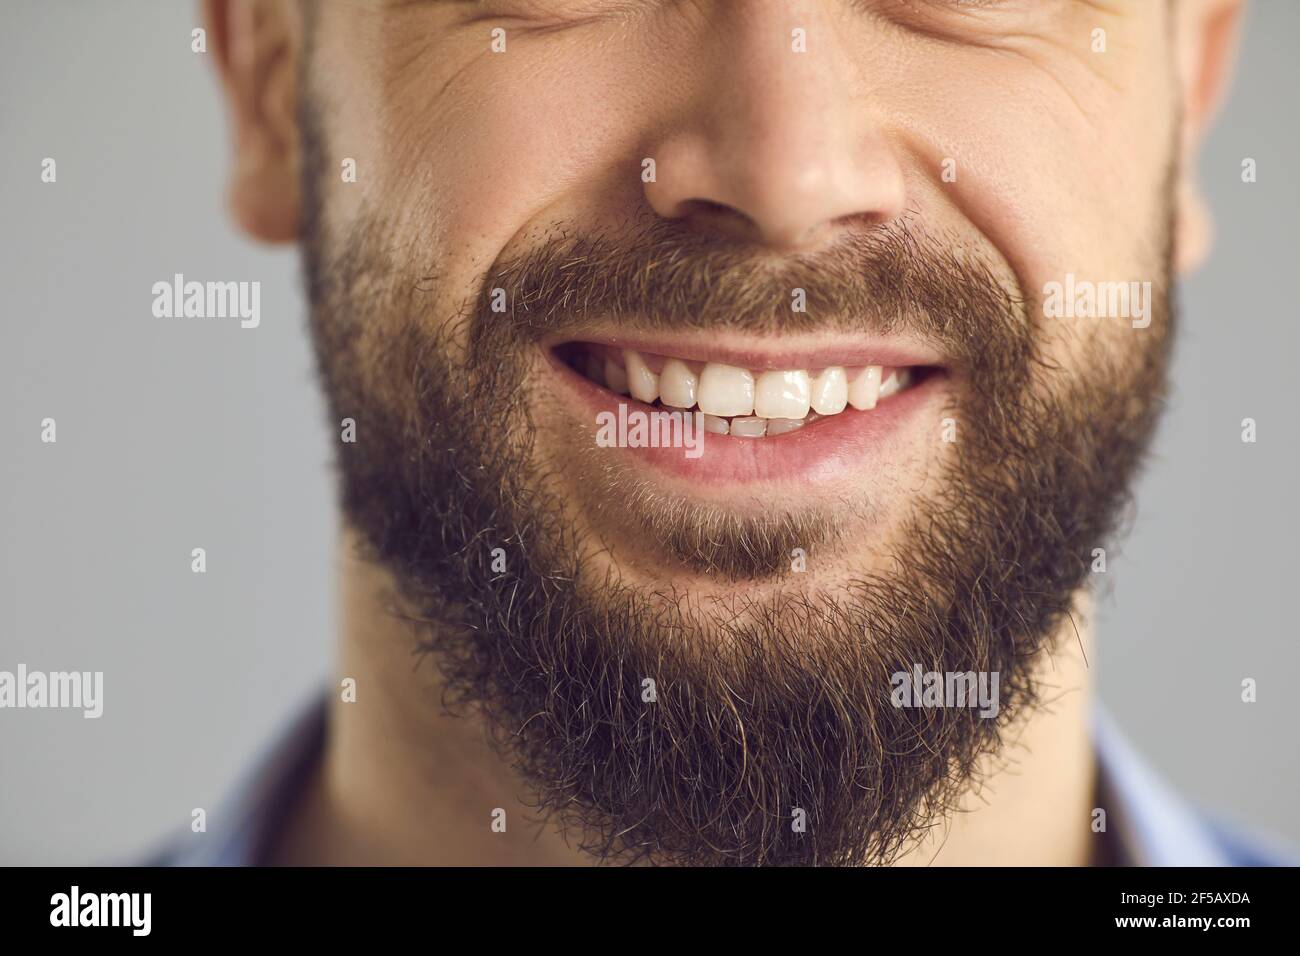 Primer plano de estudio de la parte inferior de la cara de feliz joven sonriente con barba marrón Foto de stock